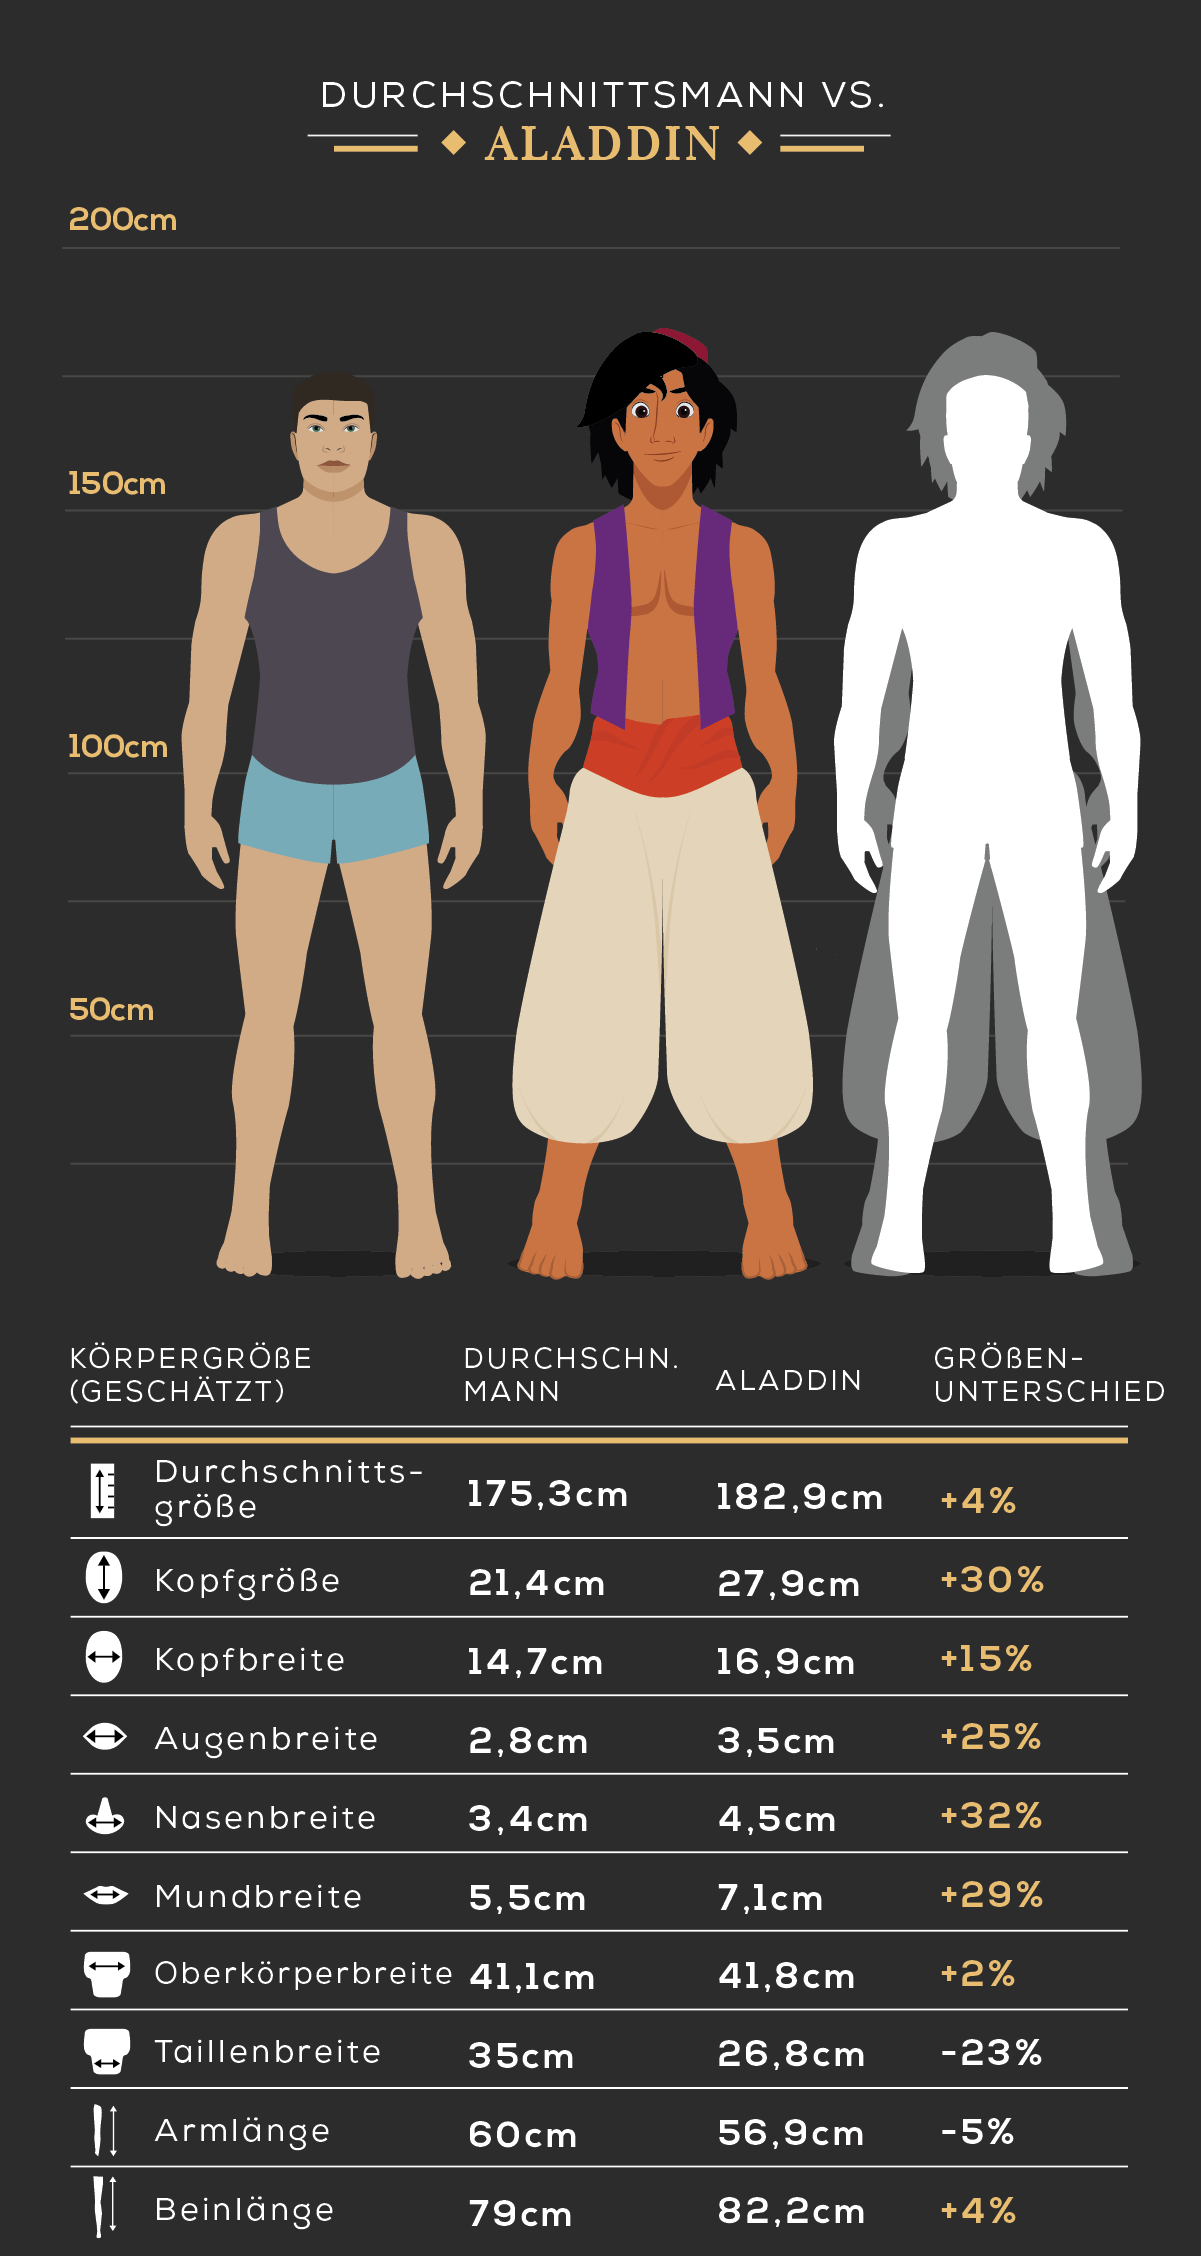 Körpergröße des Durchschnittsmann vs. Aladdin